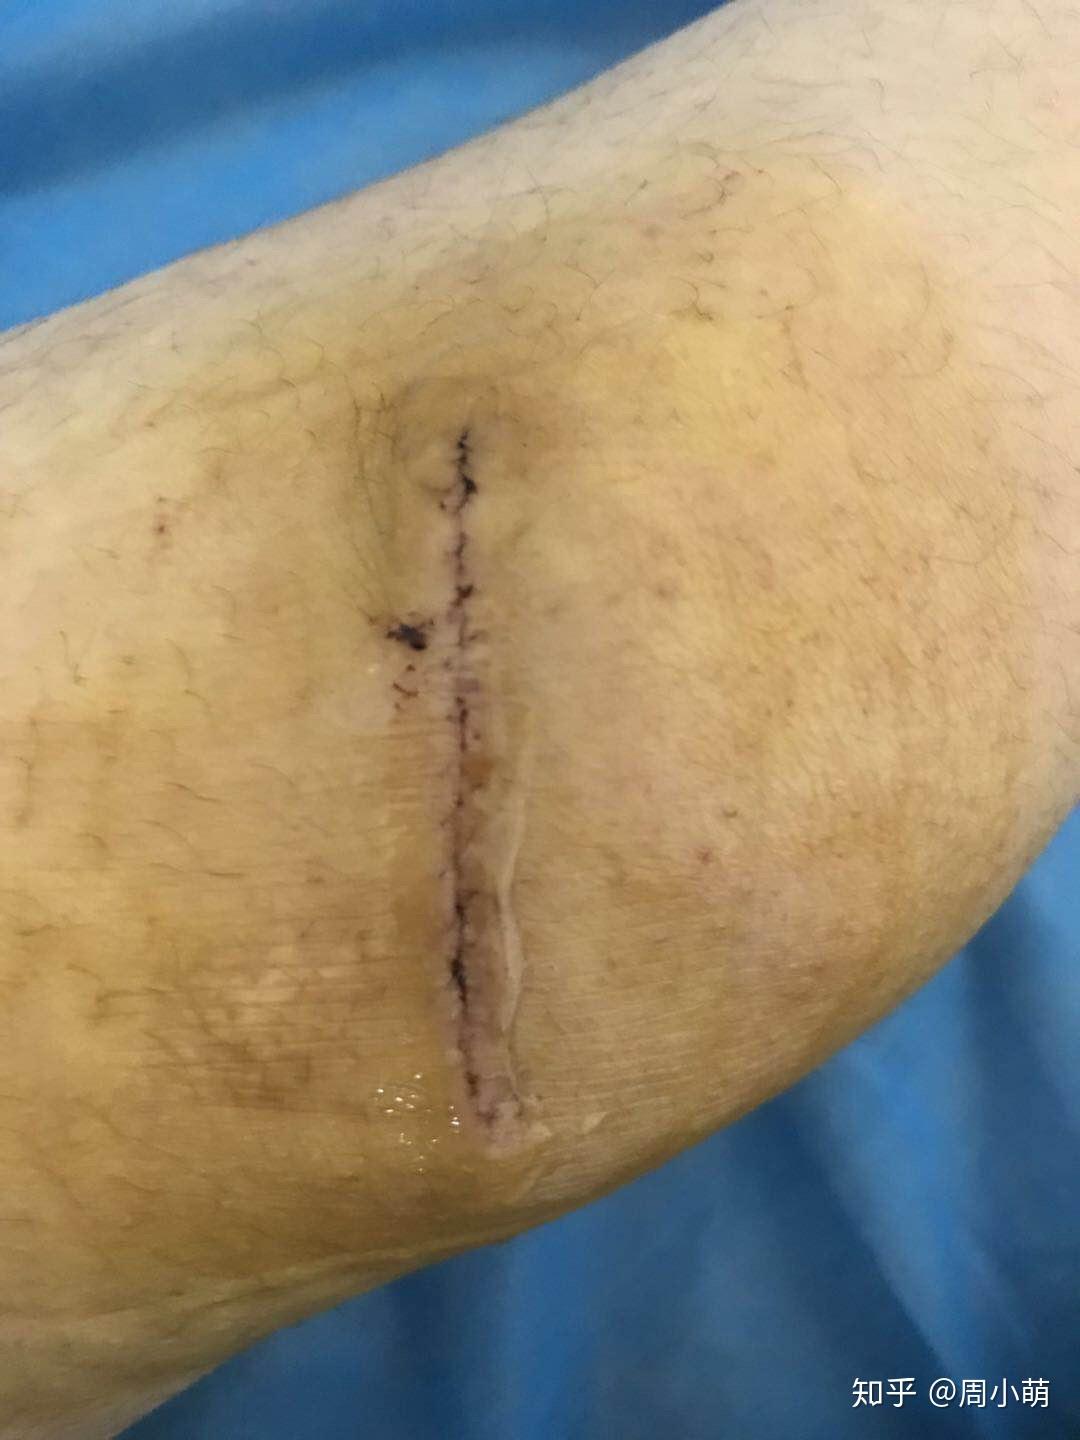 膝盖疤痕切除手术